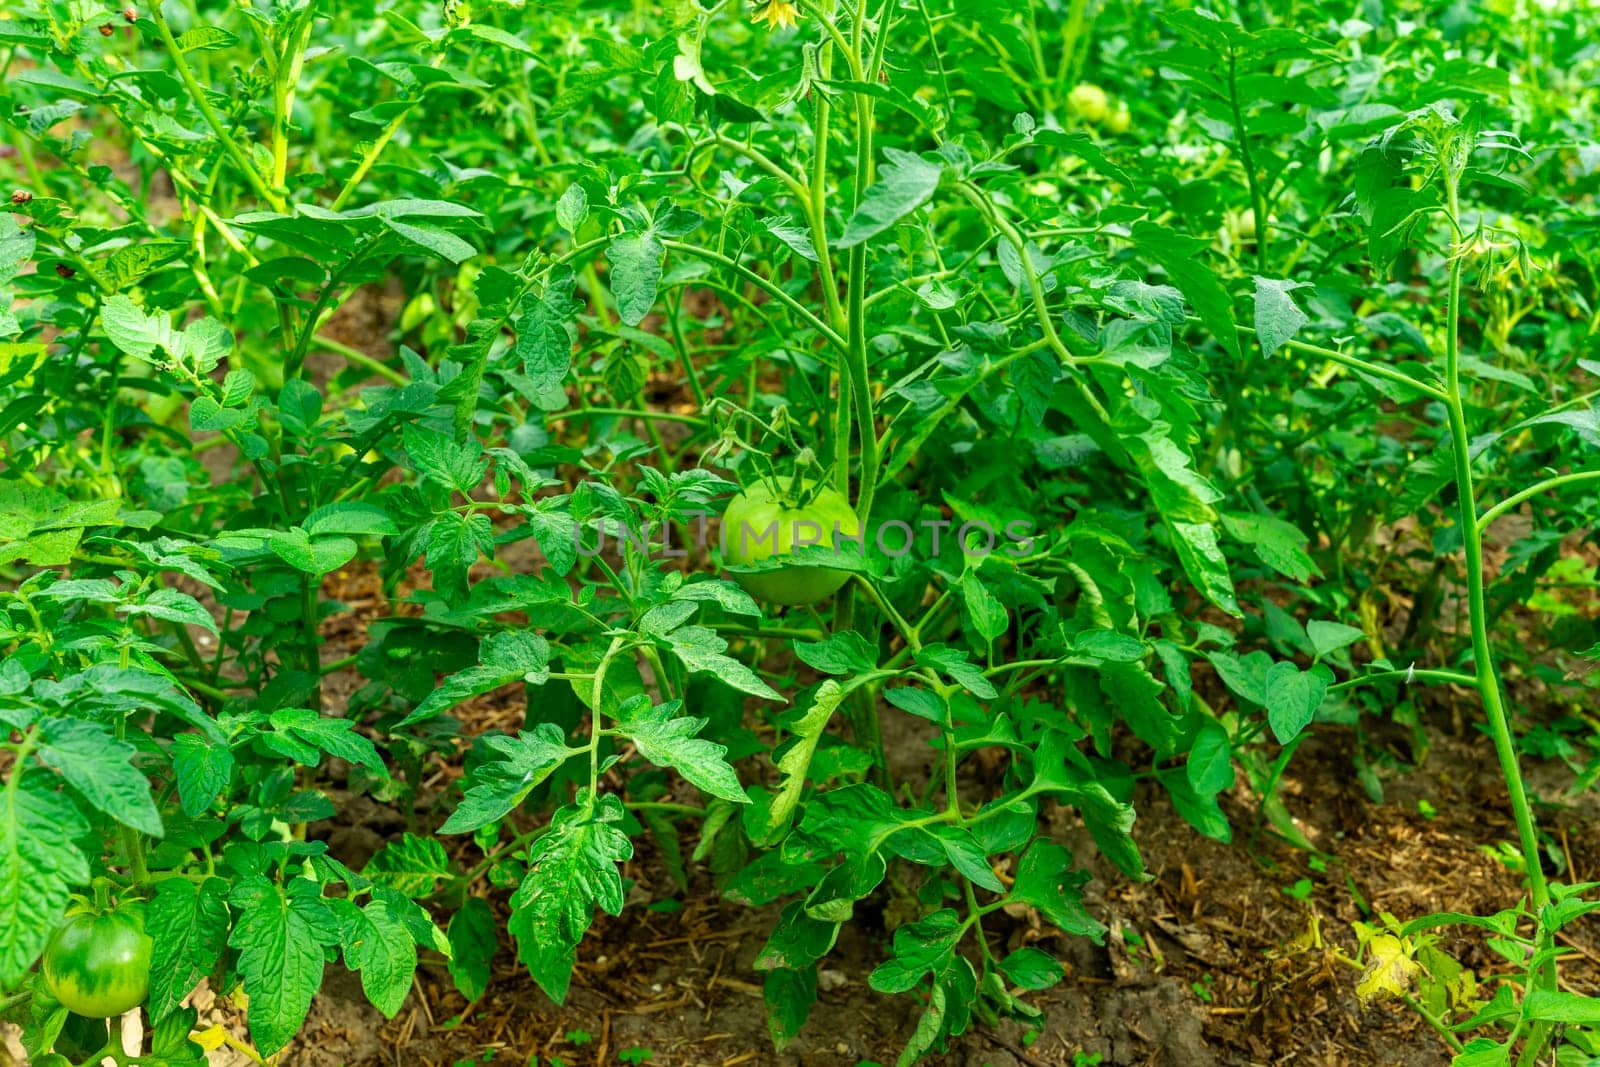 Green tomato bushes with unripe tomatoes by Serhii_Voroshchuk